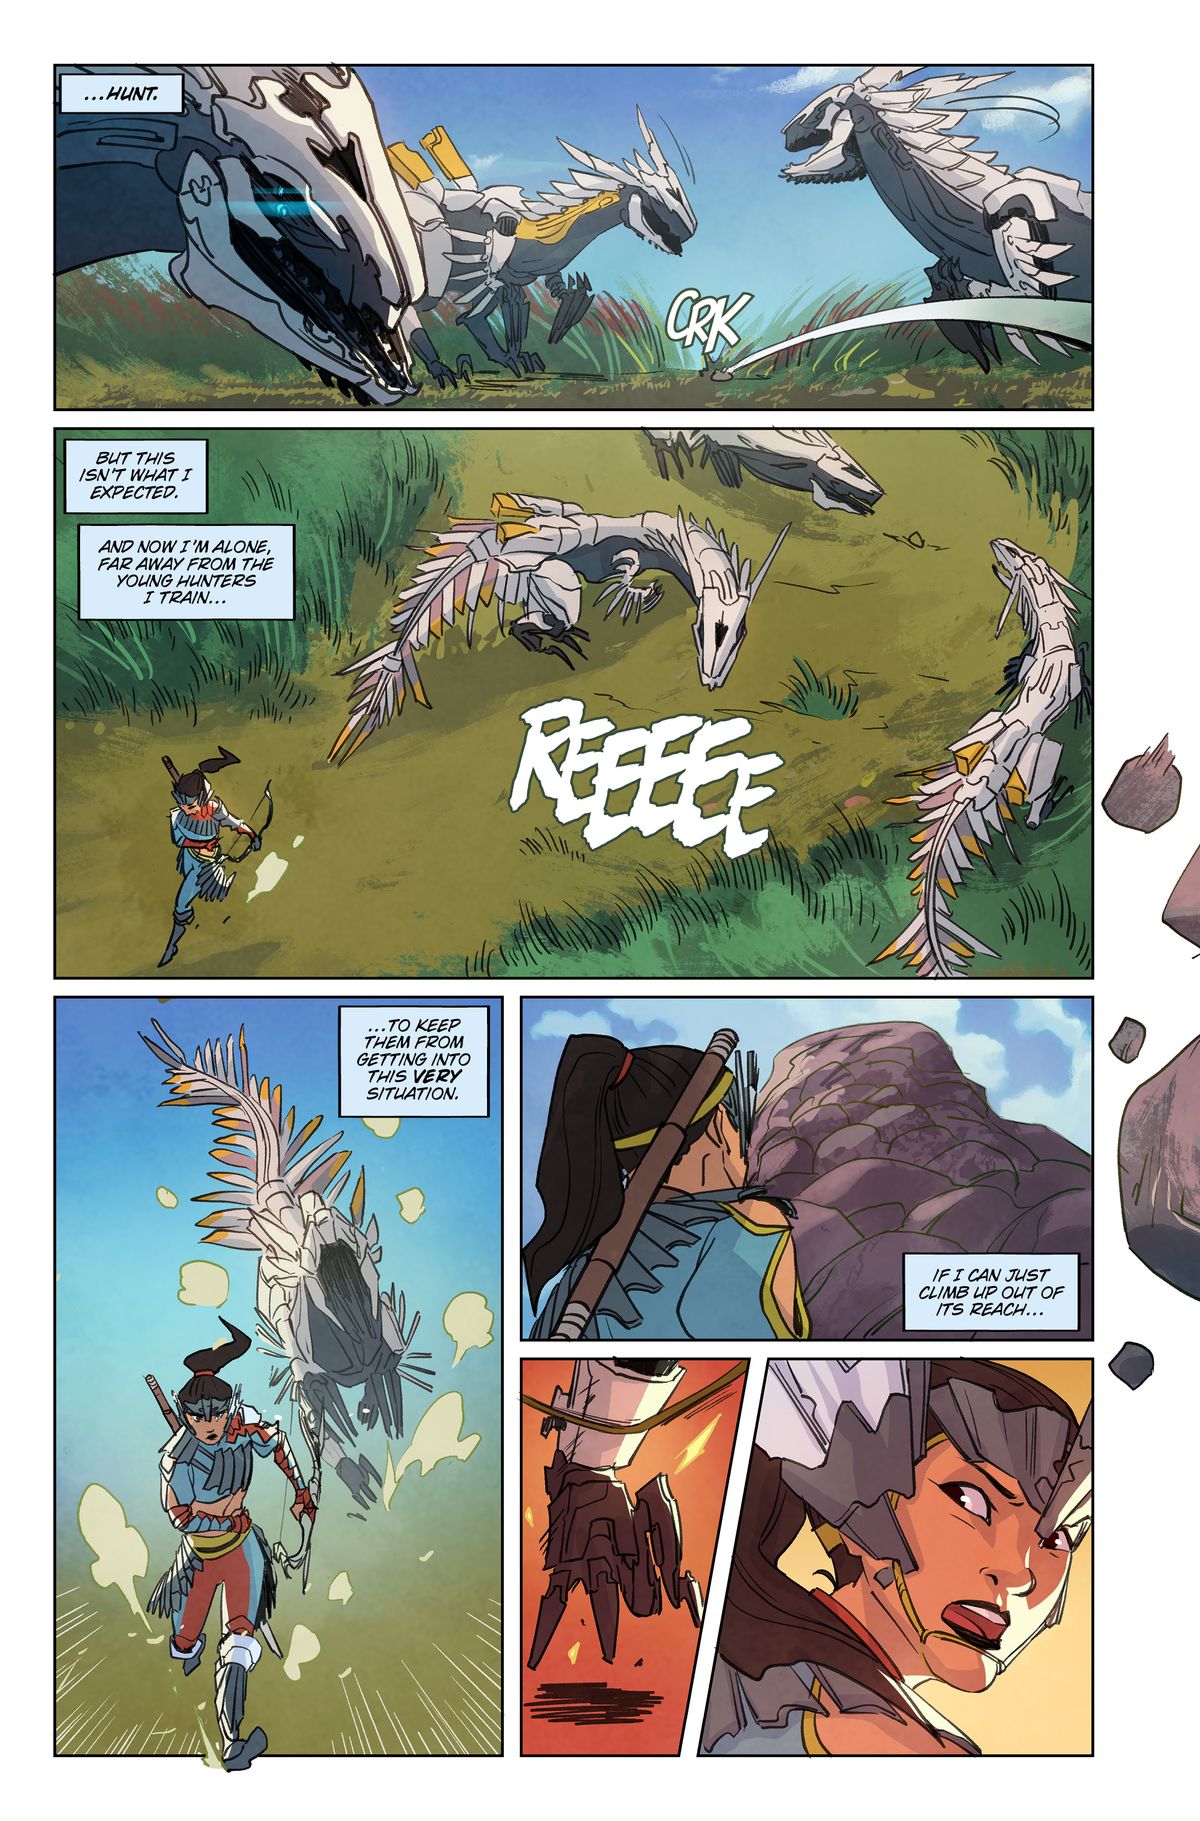 Animali meccanici simili a draghi che combattono in Horizon Zero Dawn # 1, Titan Comics (2020)